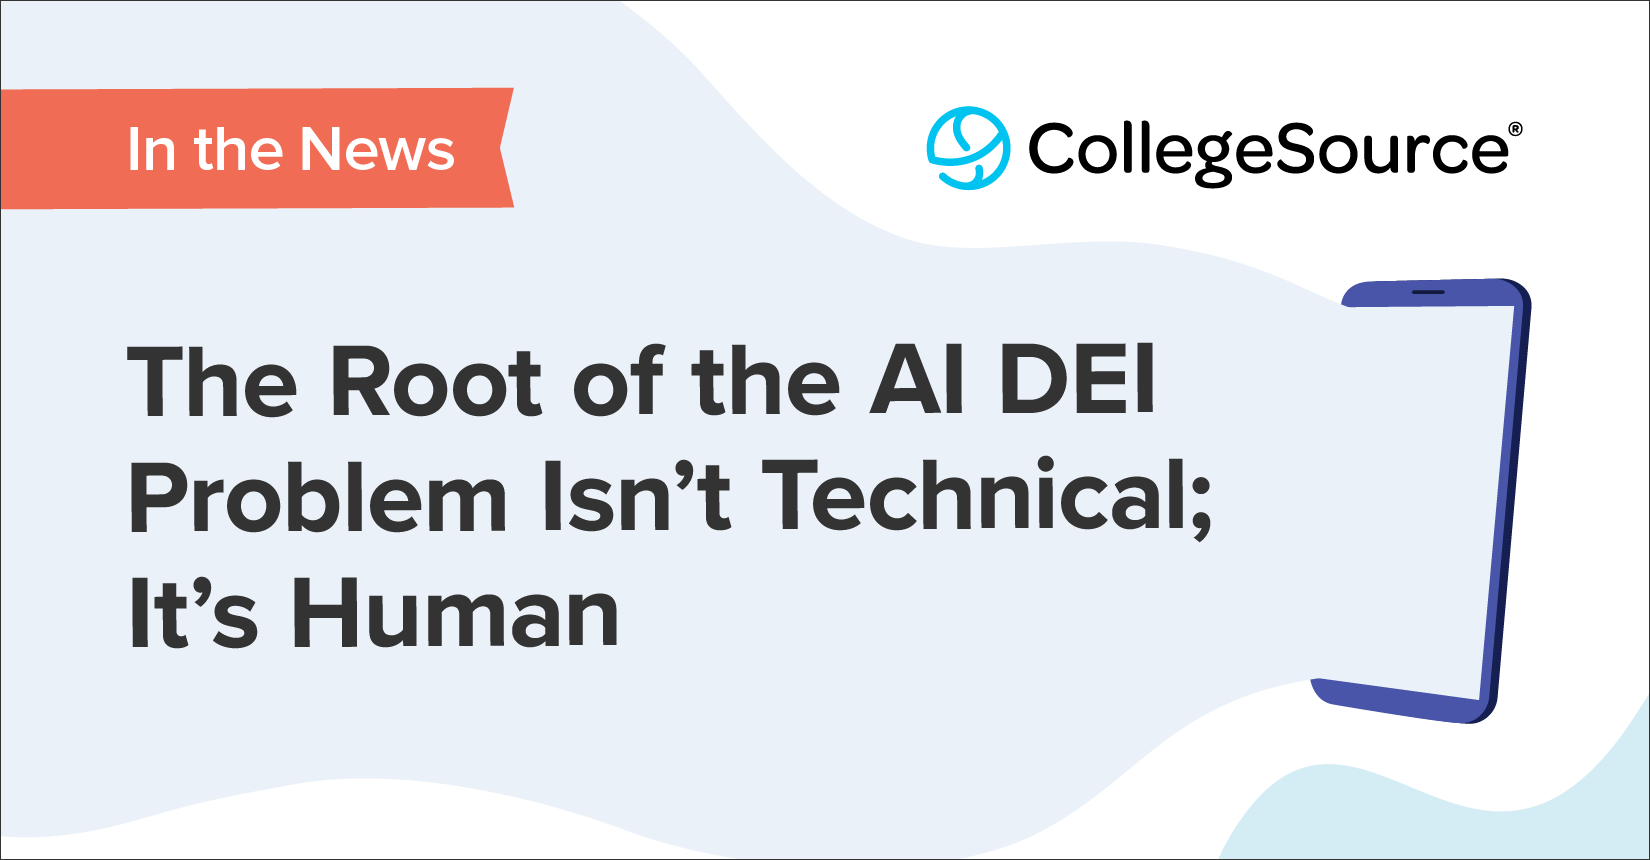 AI DEI Problem is Human